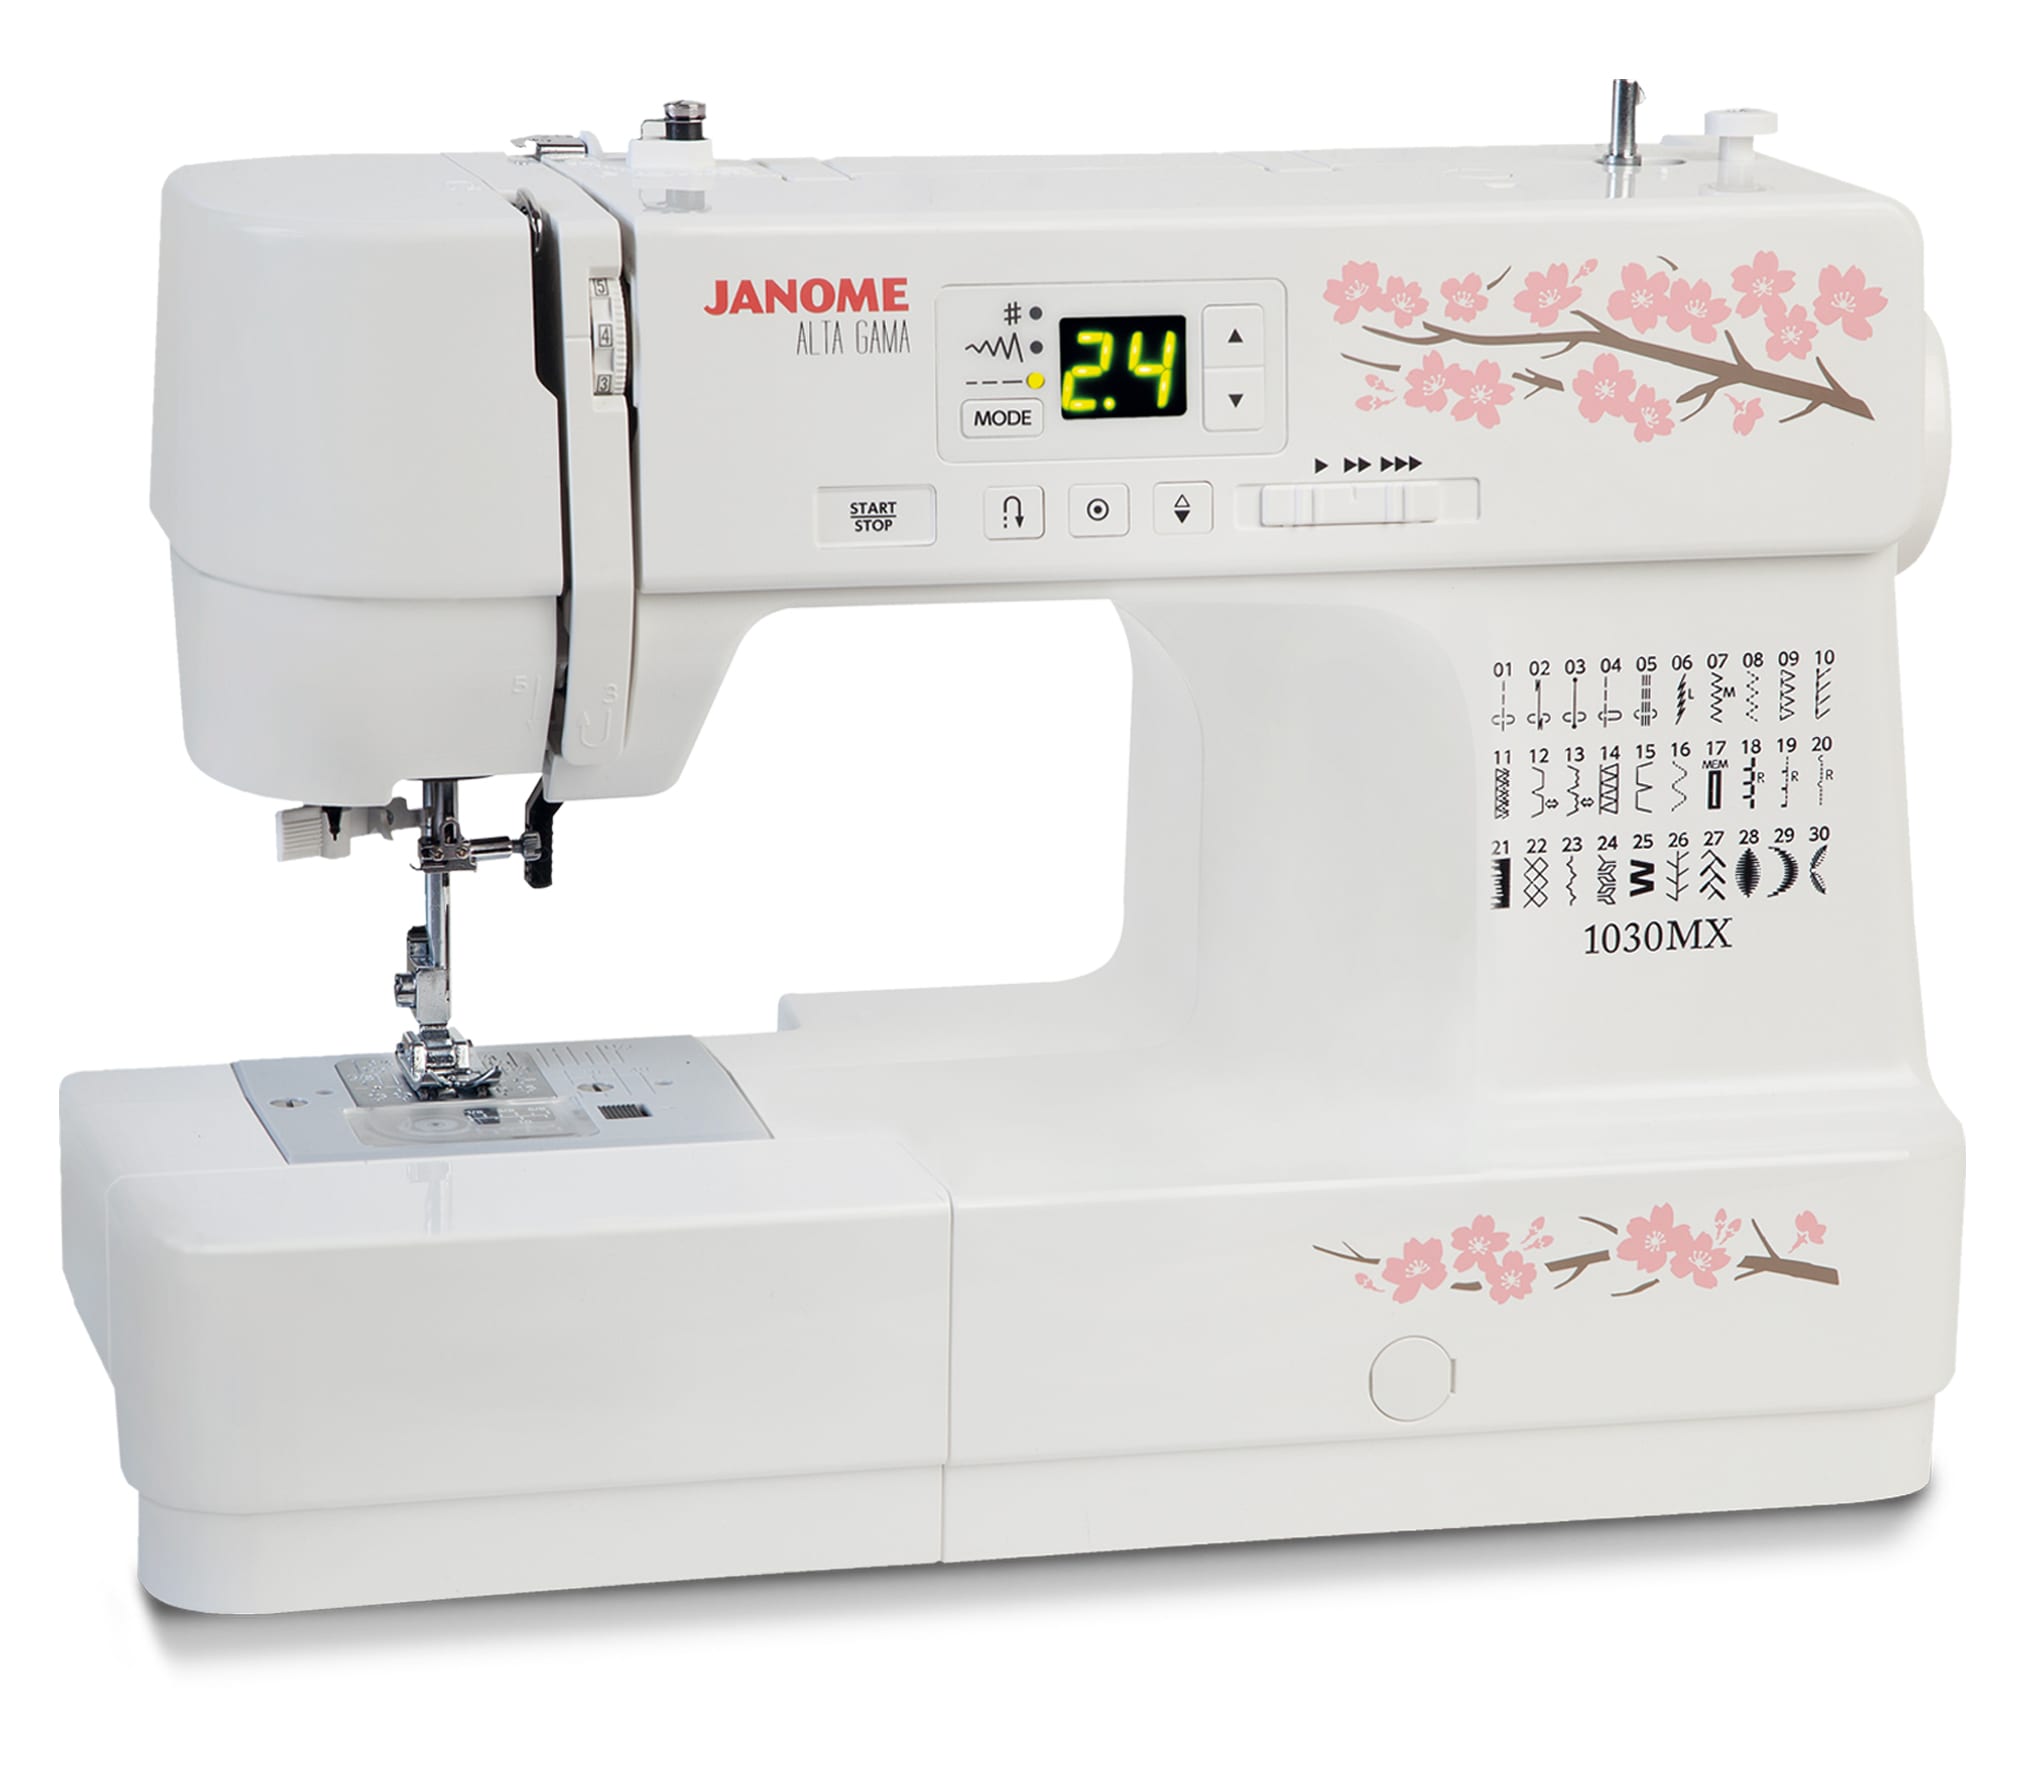 Купить недорогую швейную машинку для домашнего пользования. Швейная машина Janome xe 300. Janome PQ 300. Швейная машина Janome 1030mx.